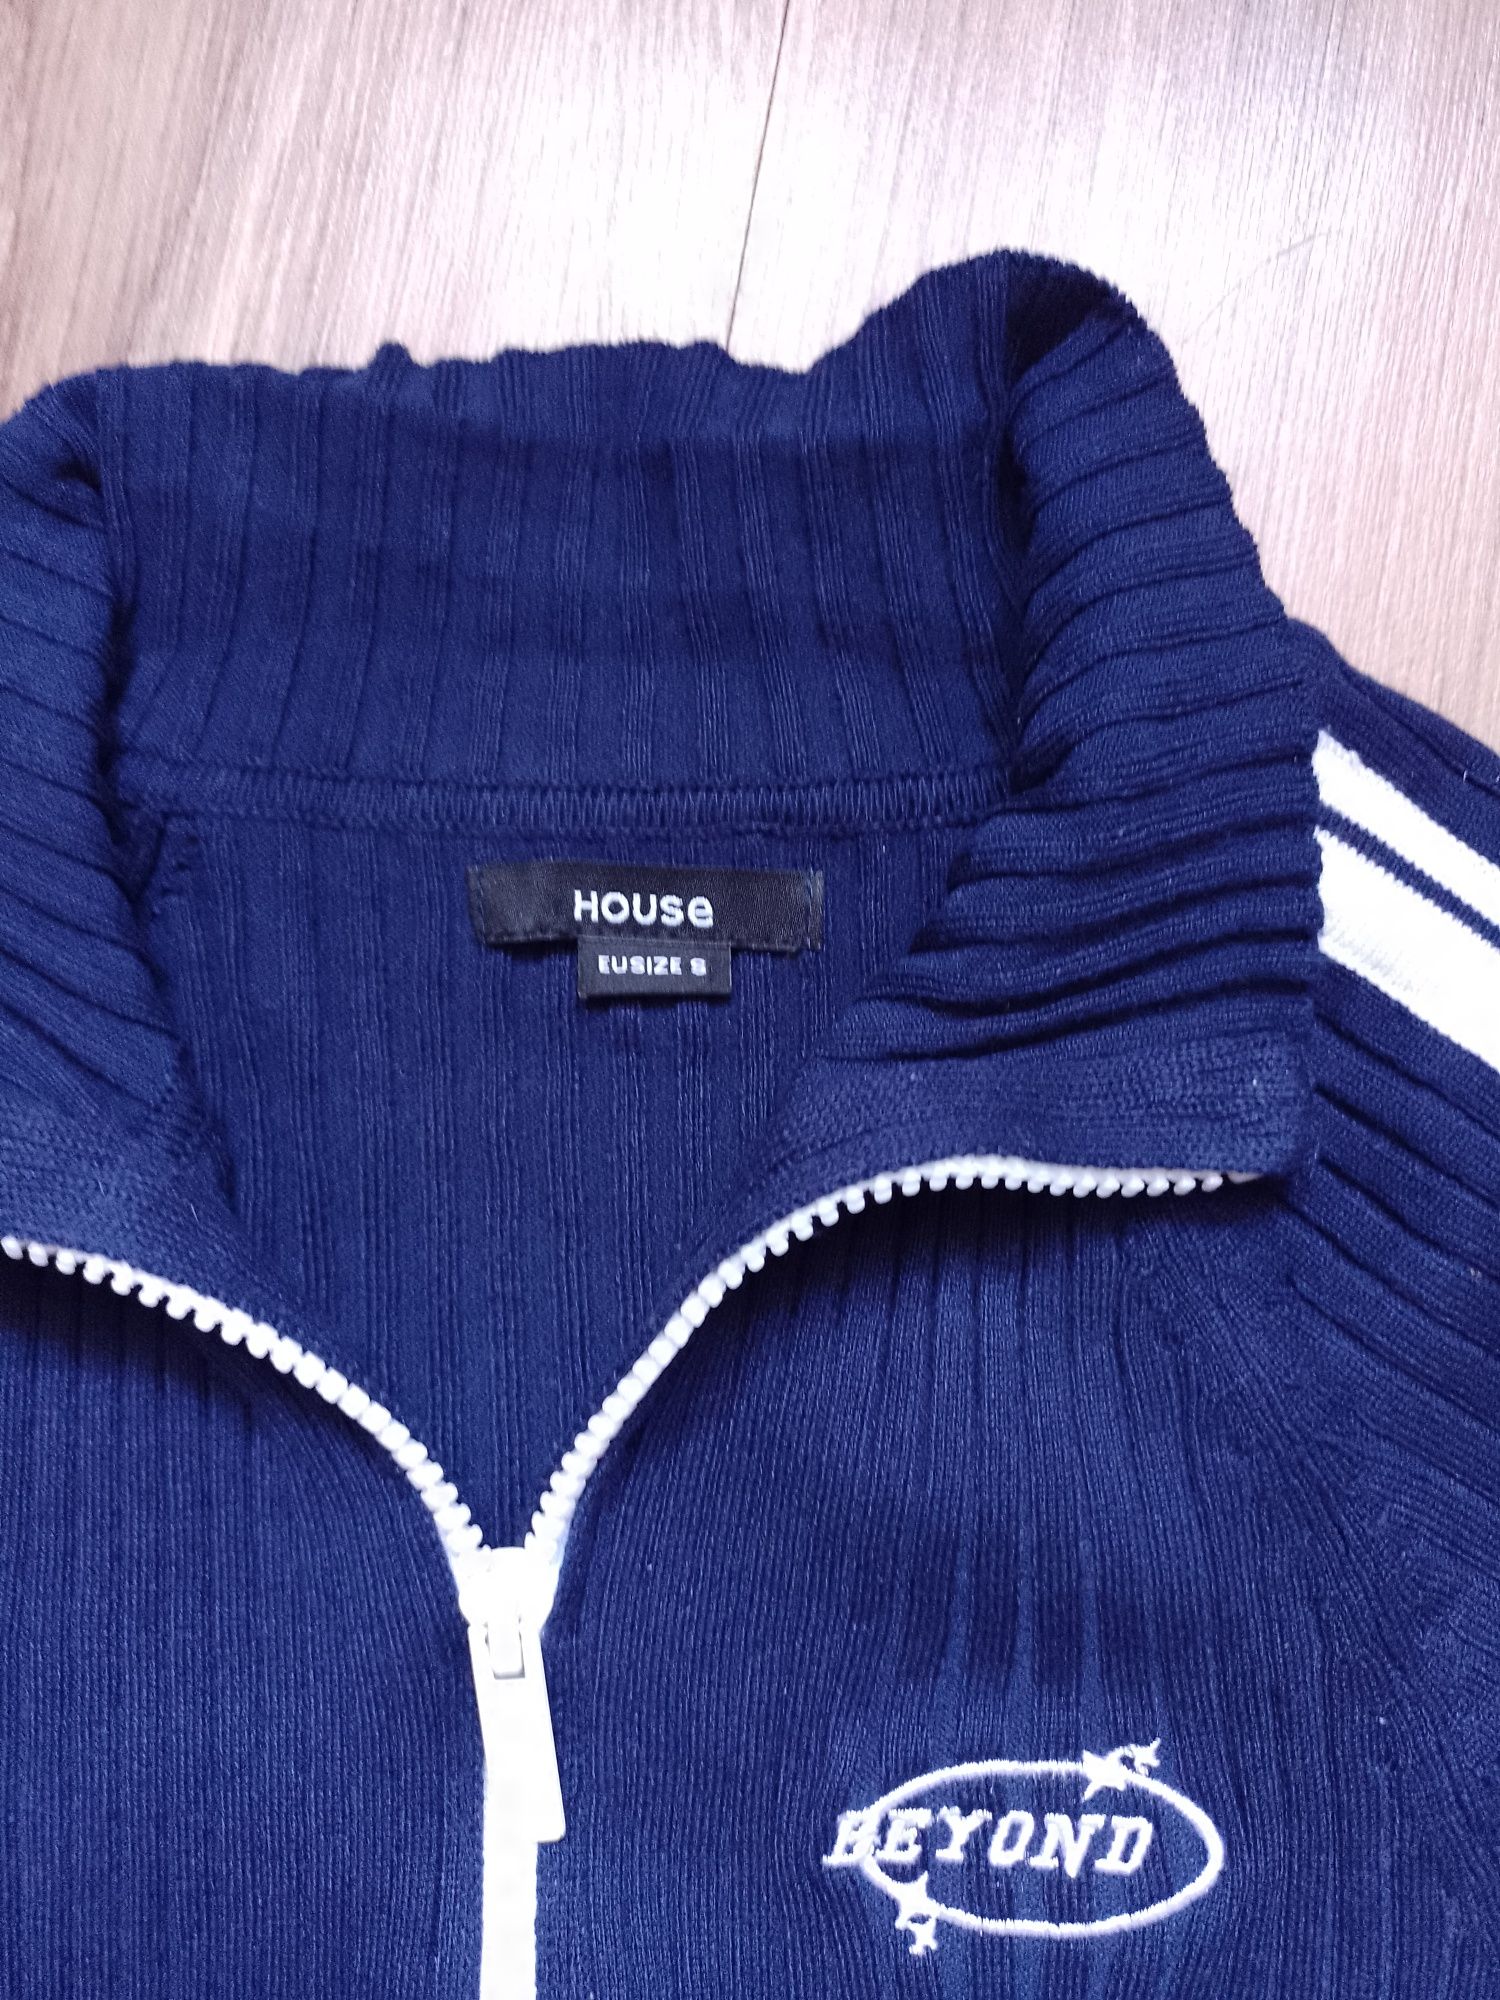 Rozpinany sweter ze stójką granatowy
39,99 PLN
Cena regularna 
99,99 P